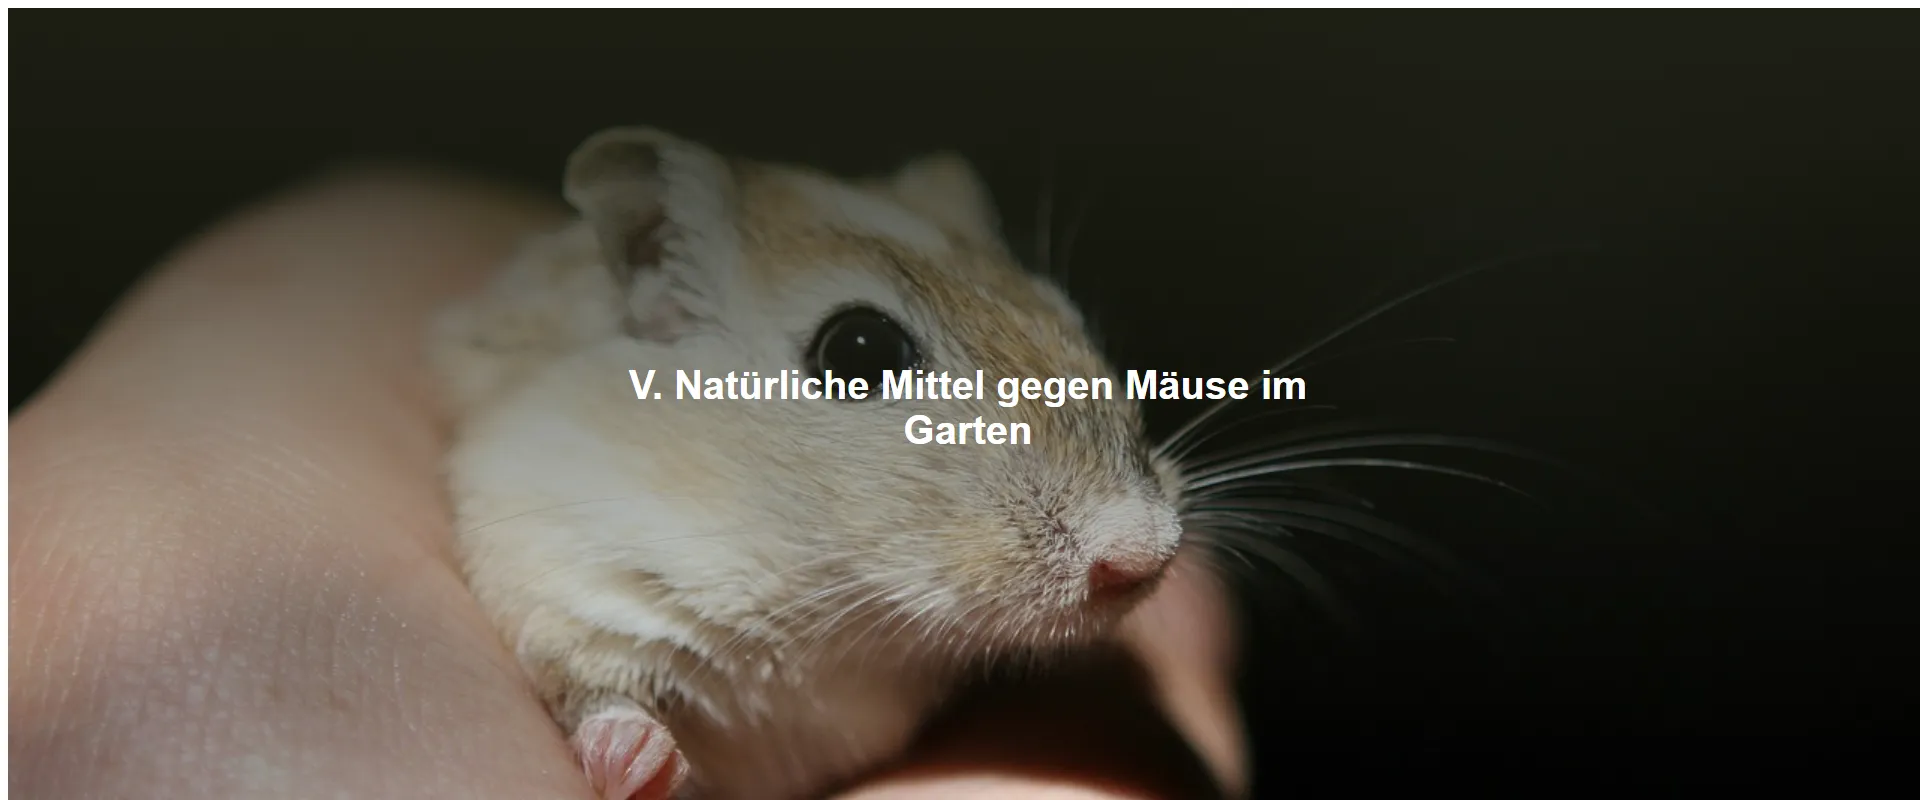 Natürliche Mittel gegen Mäuse im Garten